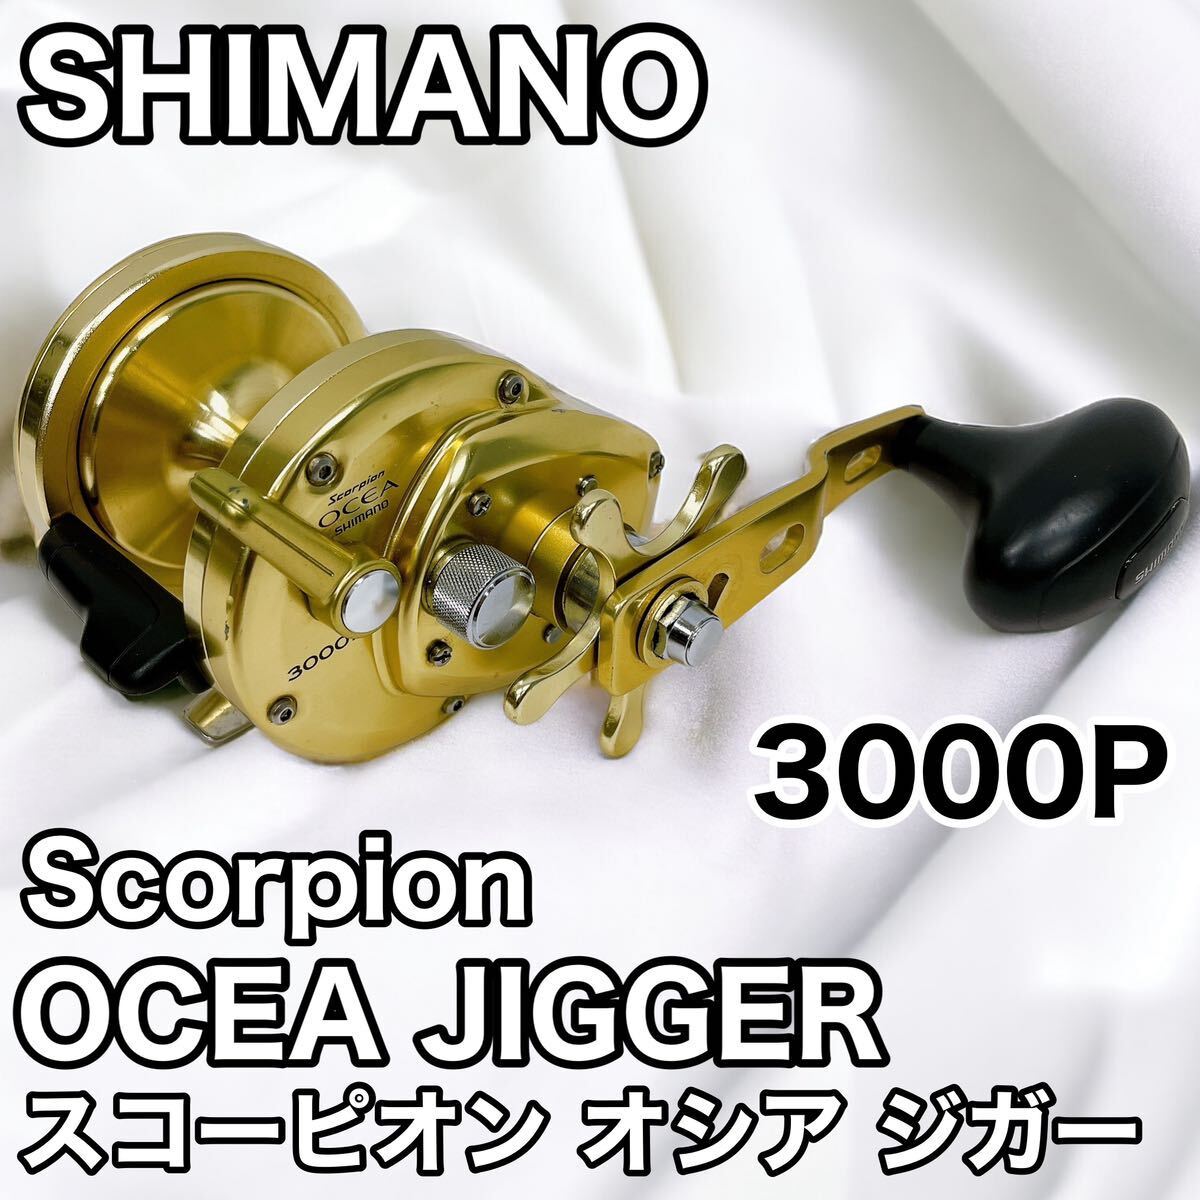 SHIMANO シマノ Scorpion OCEA JIGGER 3000P スコーピオン オシア ジガー 右ハンドルの画像1